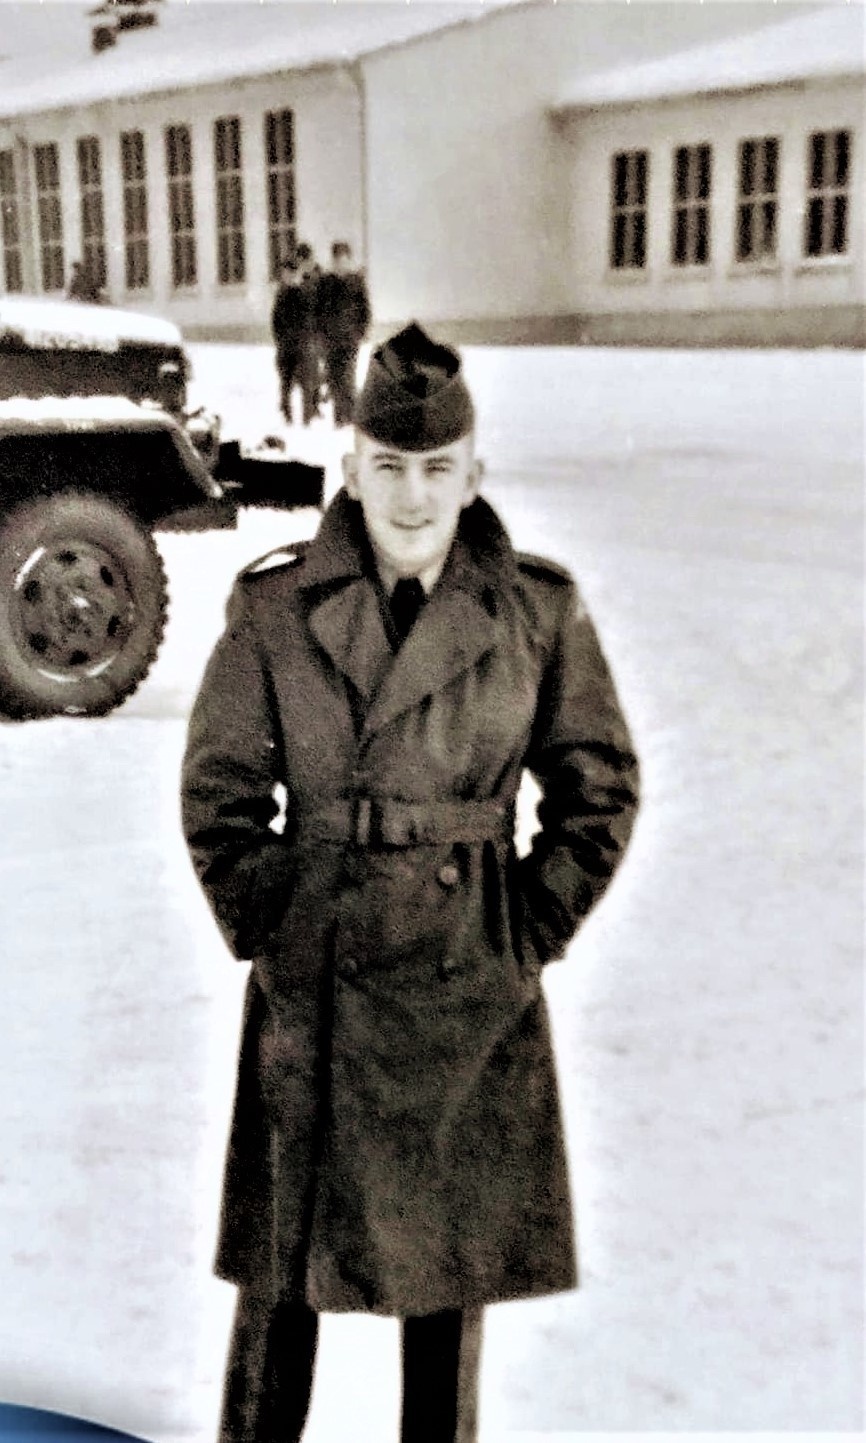 Kenneth Aungst in 1955